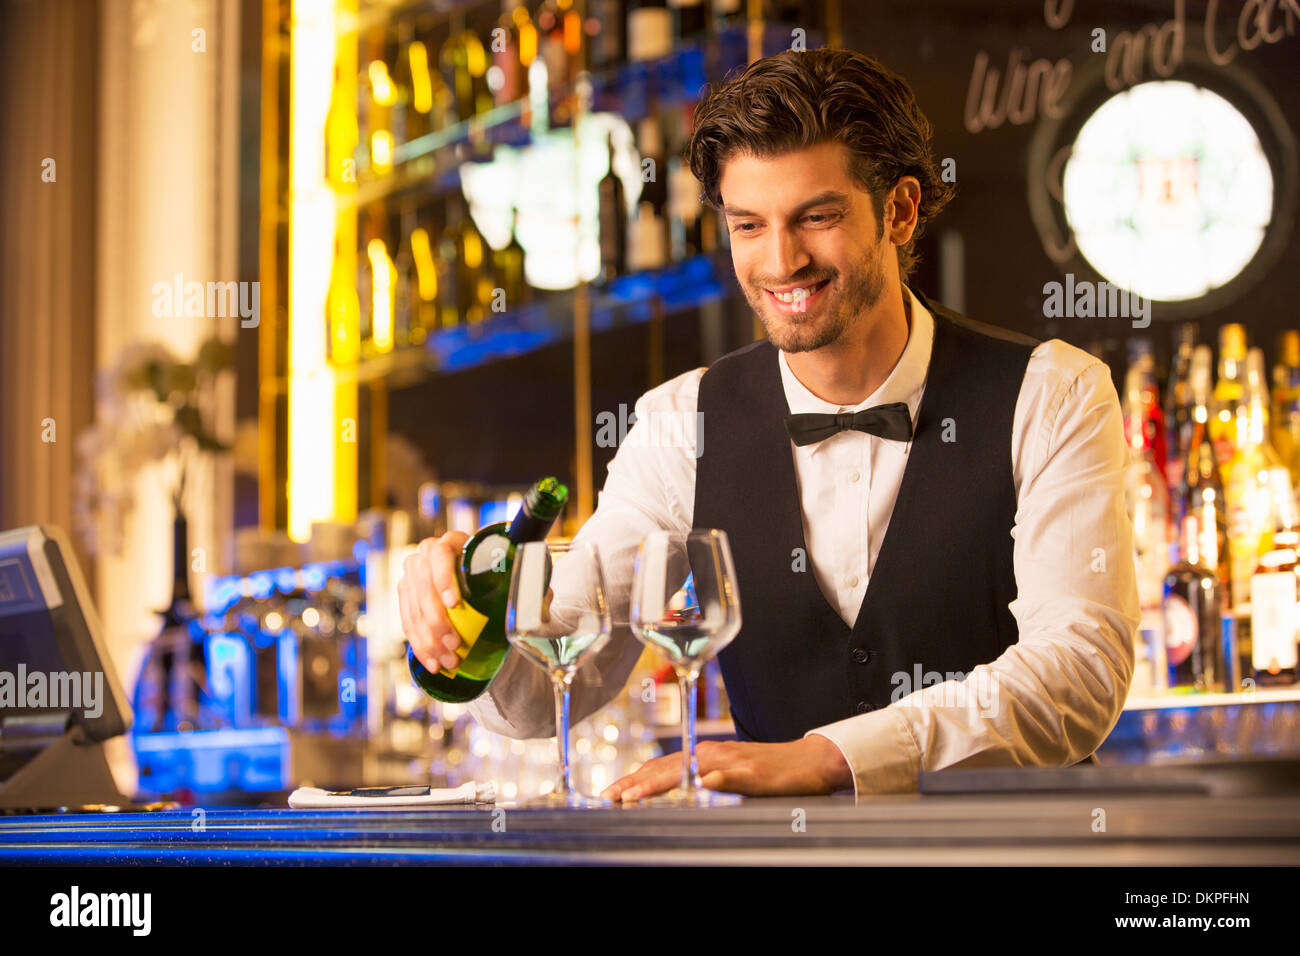 Bien habillé bartender pouring wine Banque D'Images